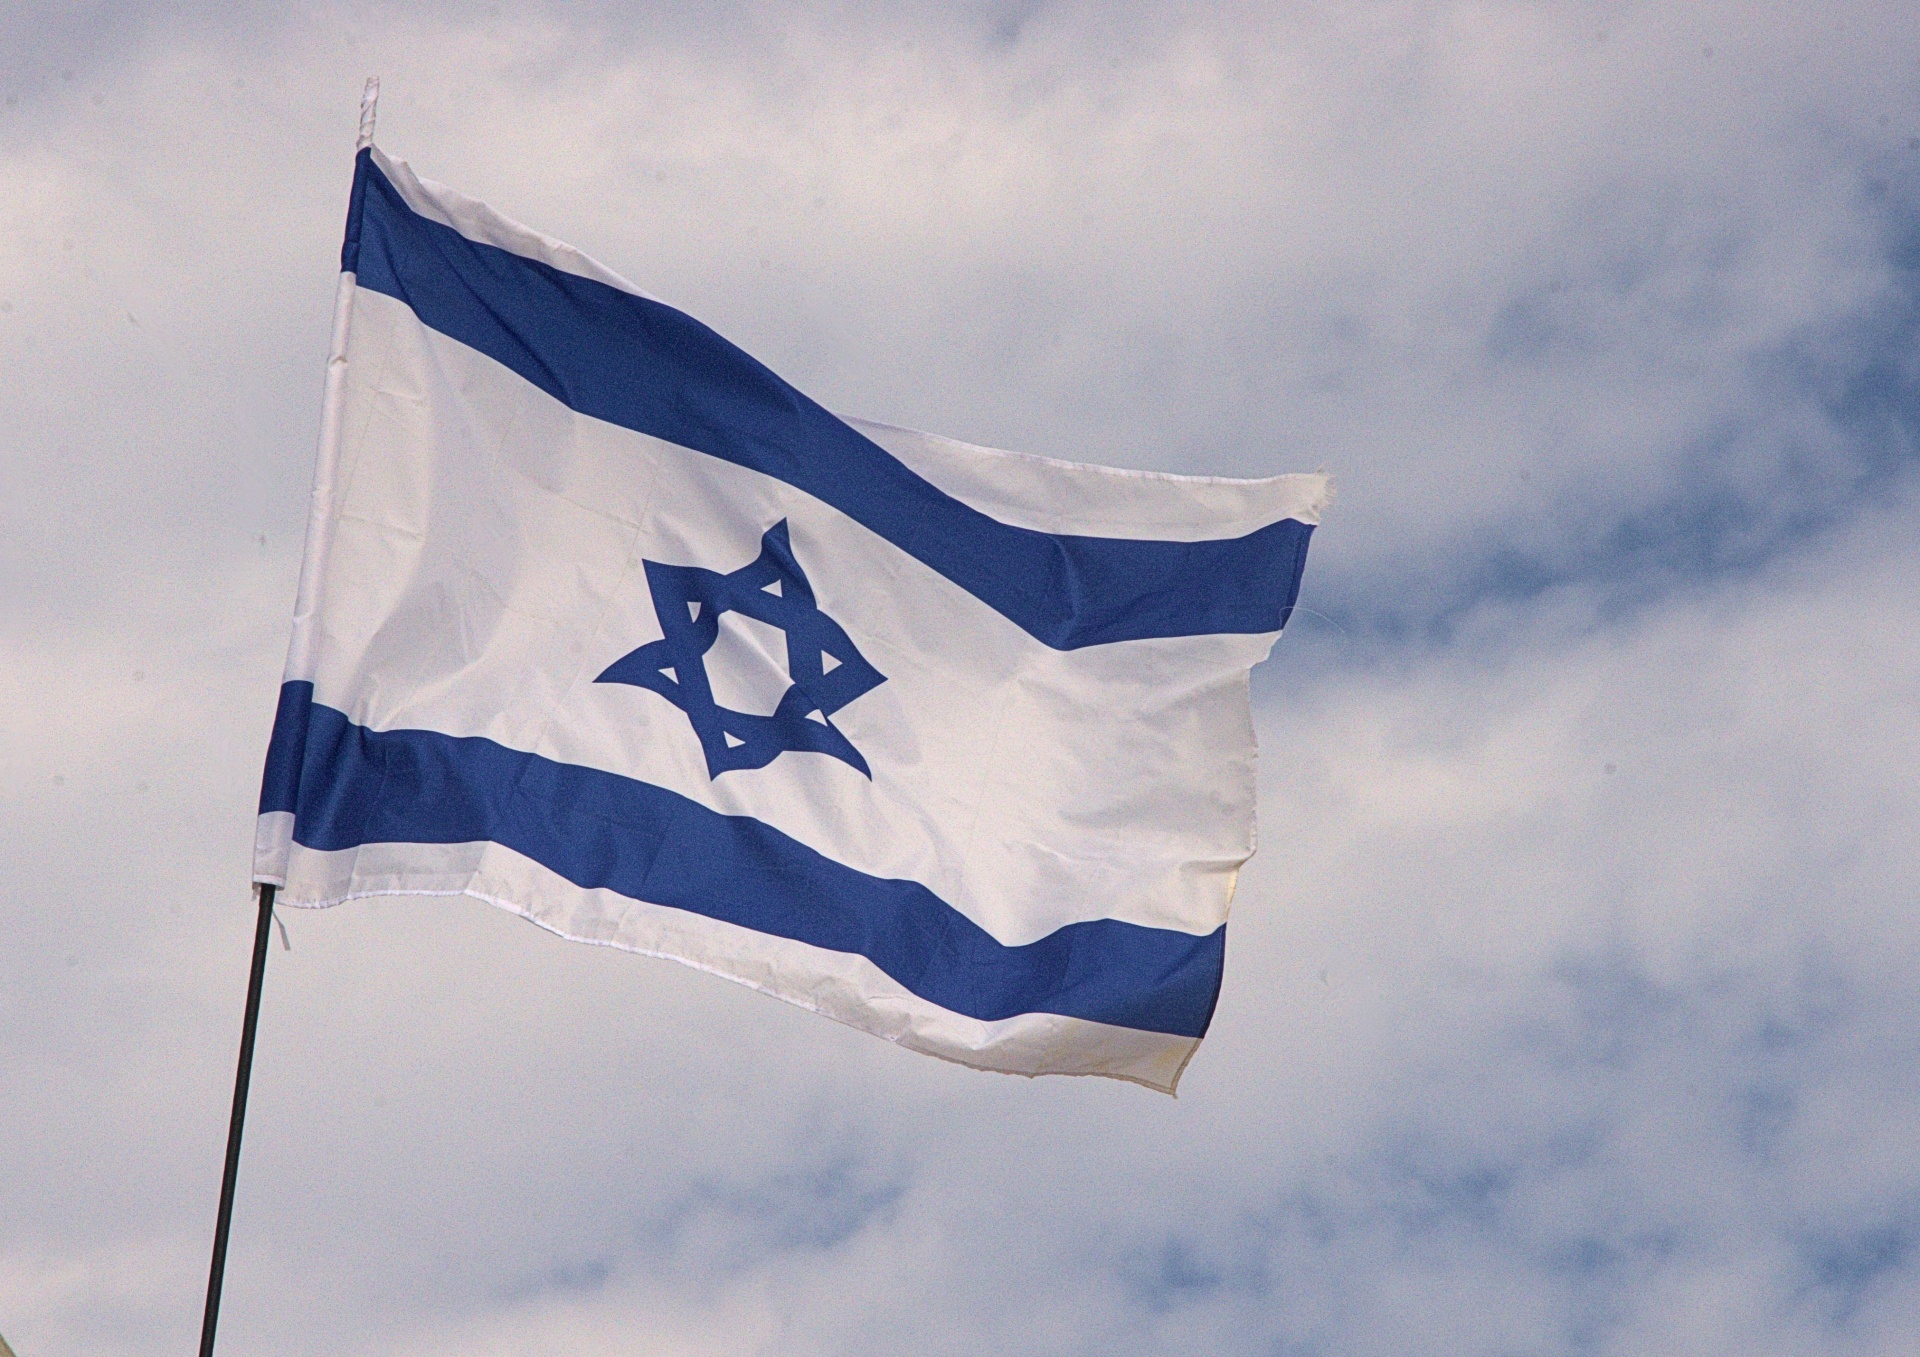 Bandera israelí ondeando en el viento